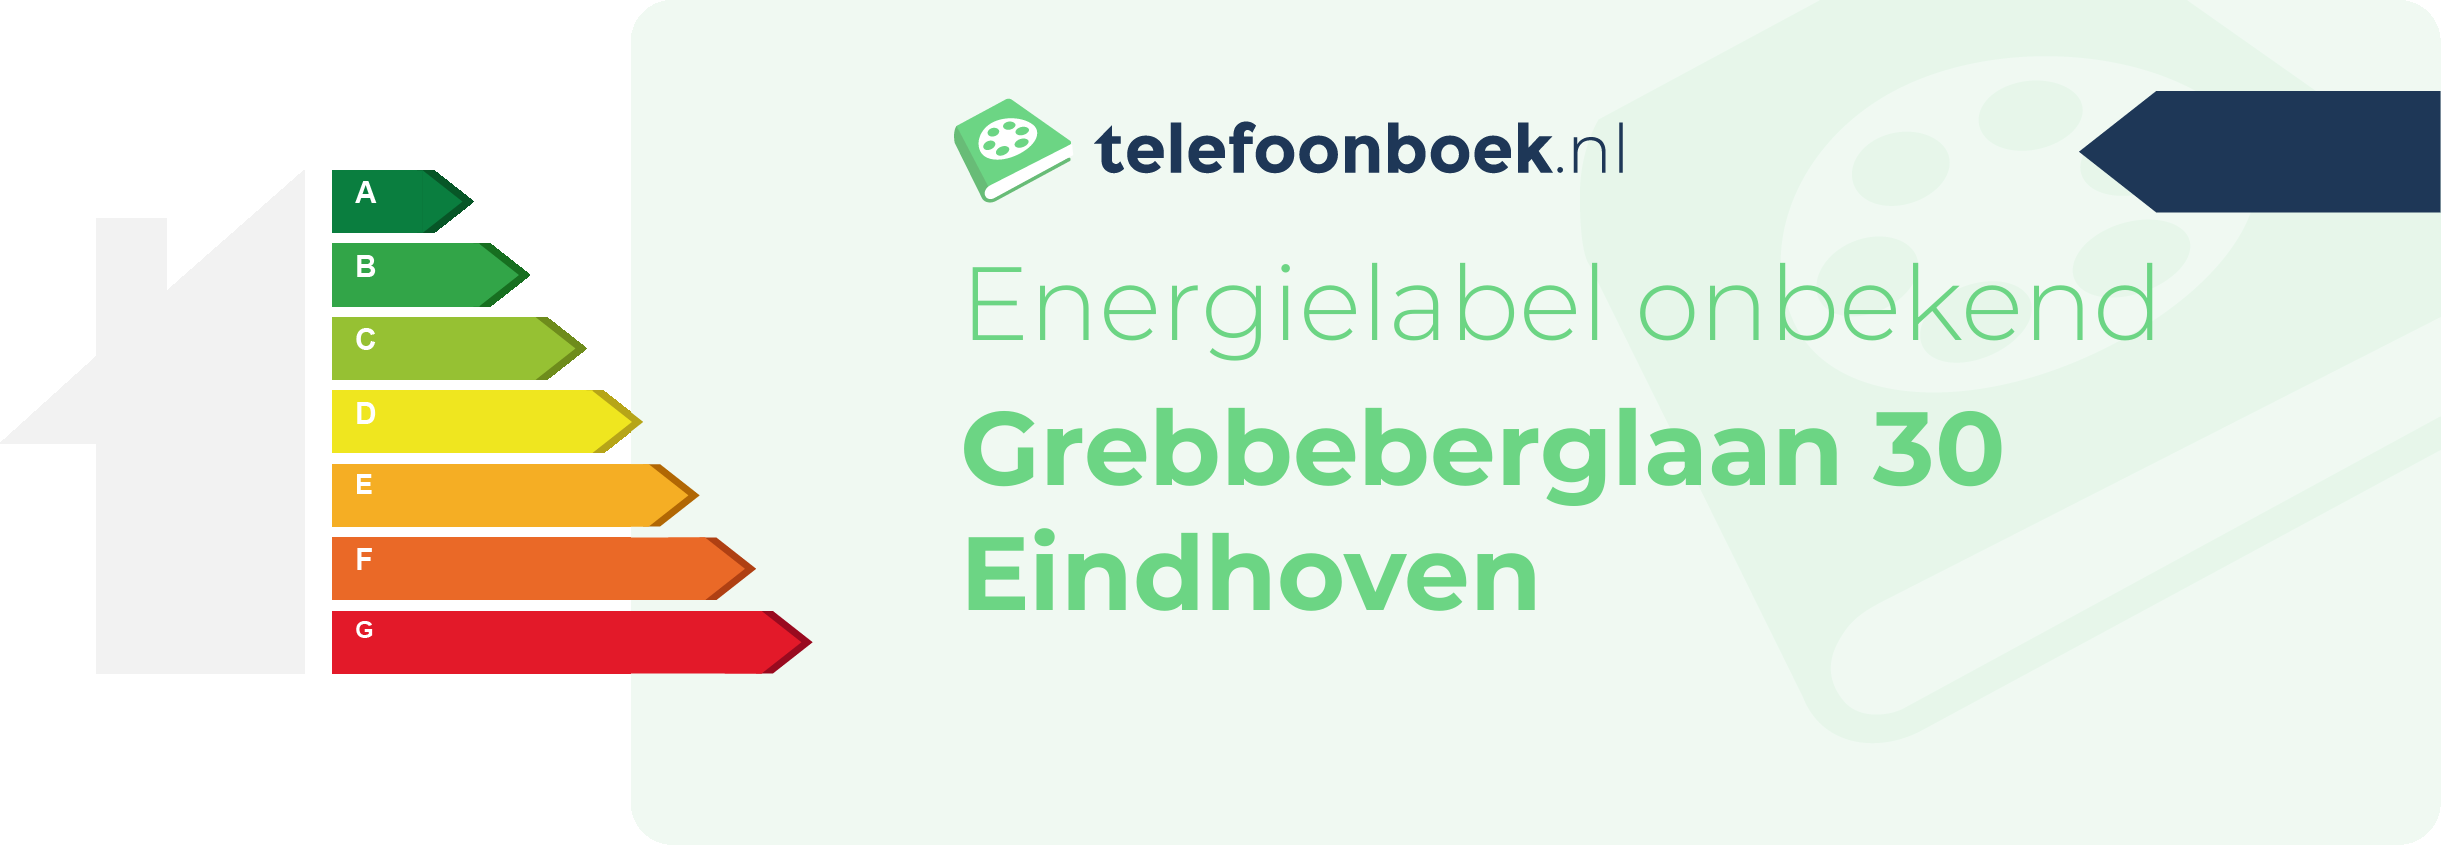 Energielabel Grebbeberglaan 30 Eindhoven